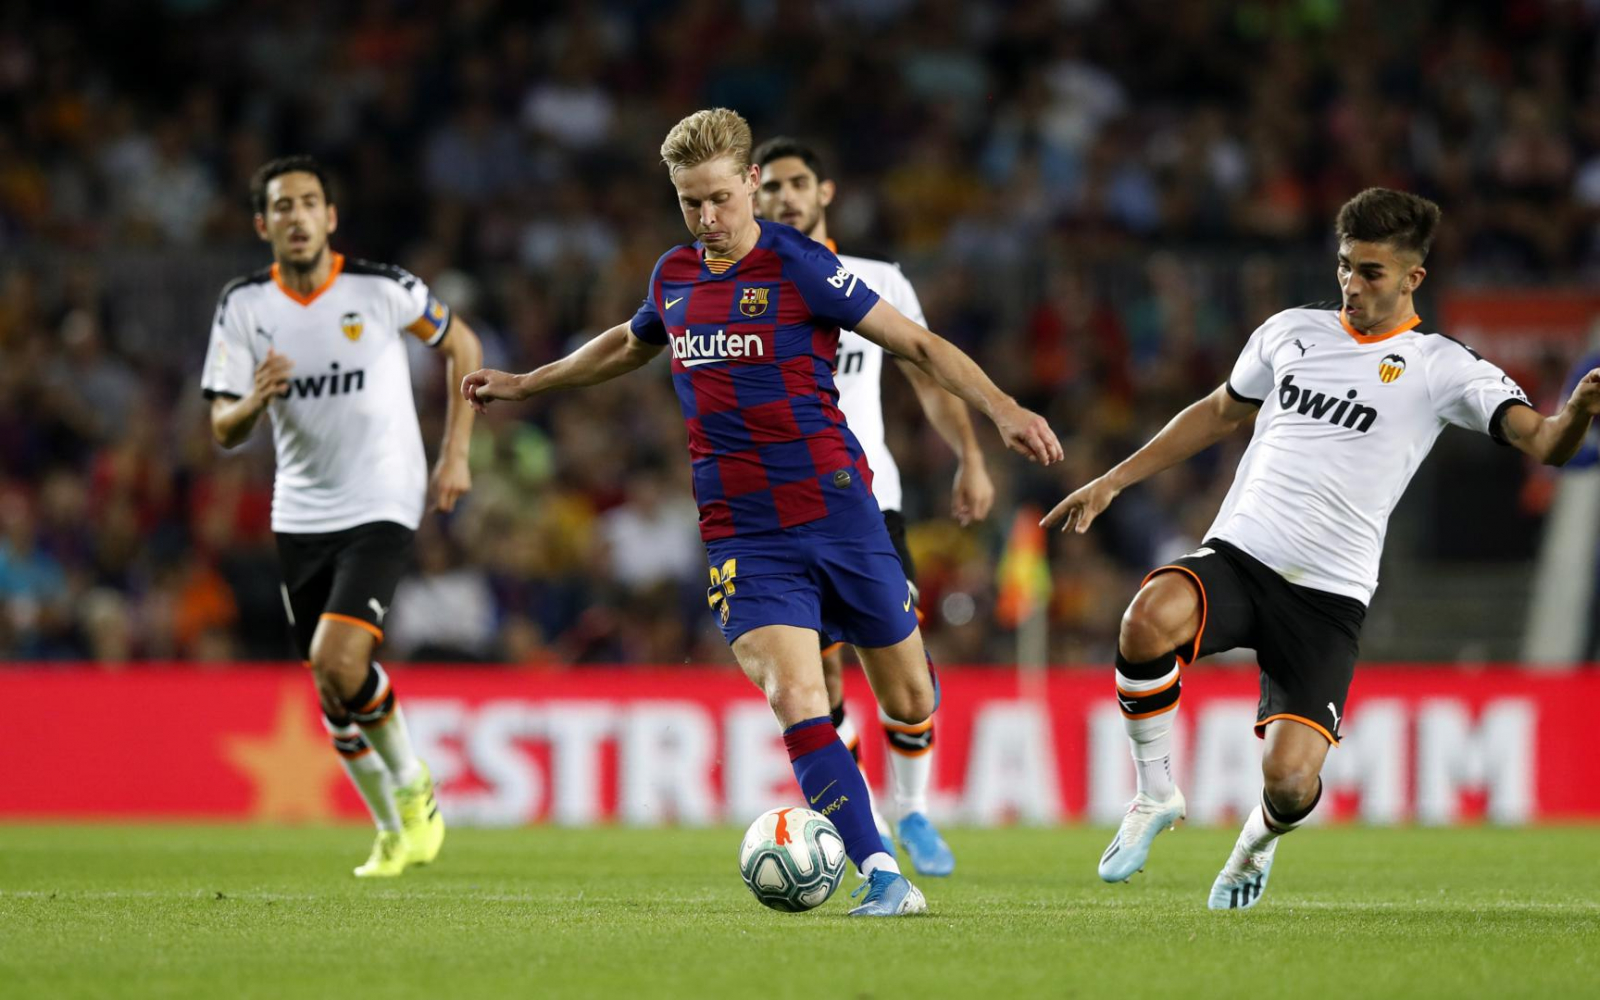 Barca vs Valencia: Đội hình ra sân và thành tích đối đầu